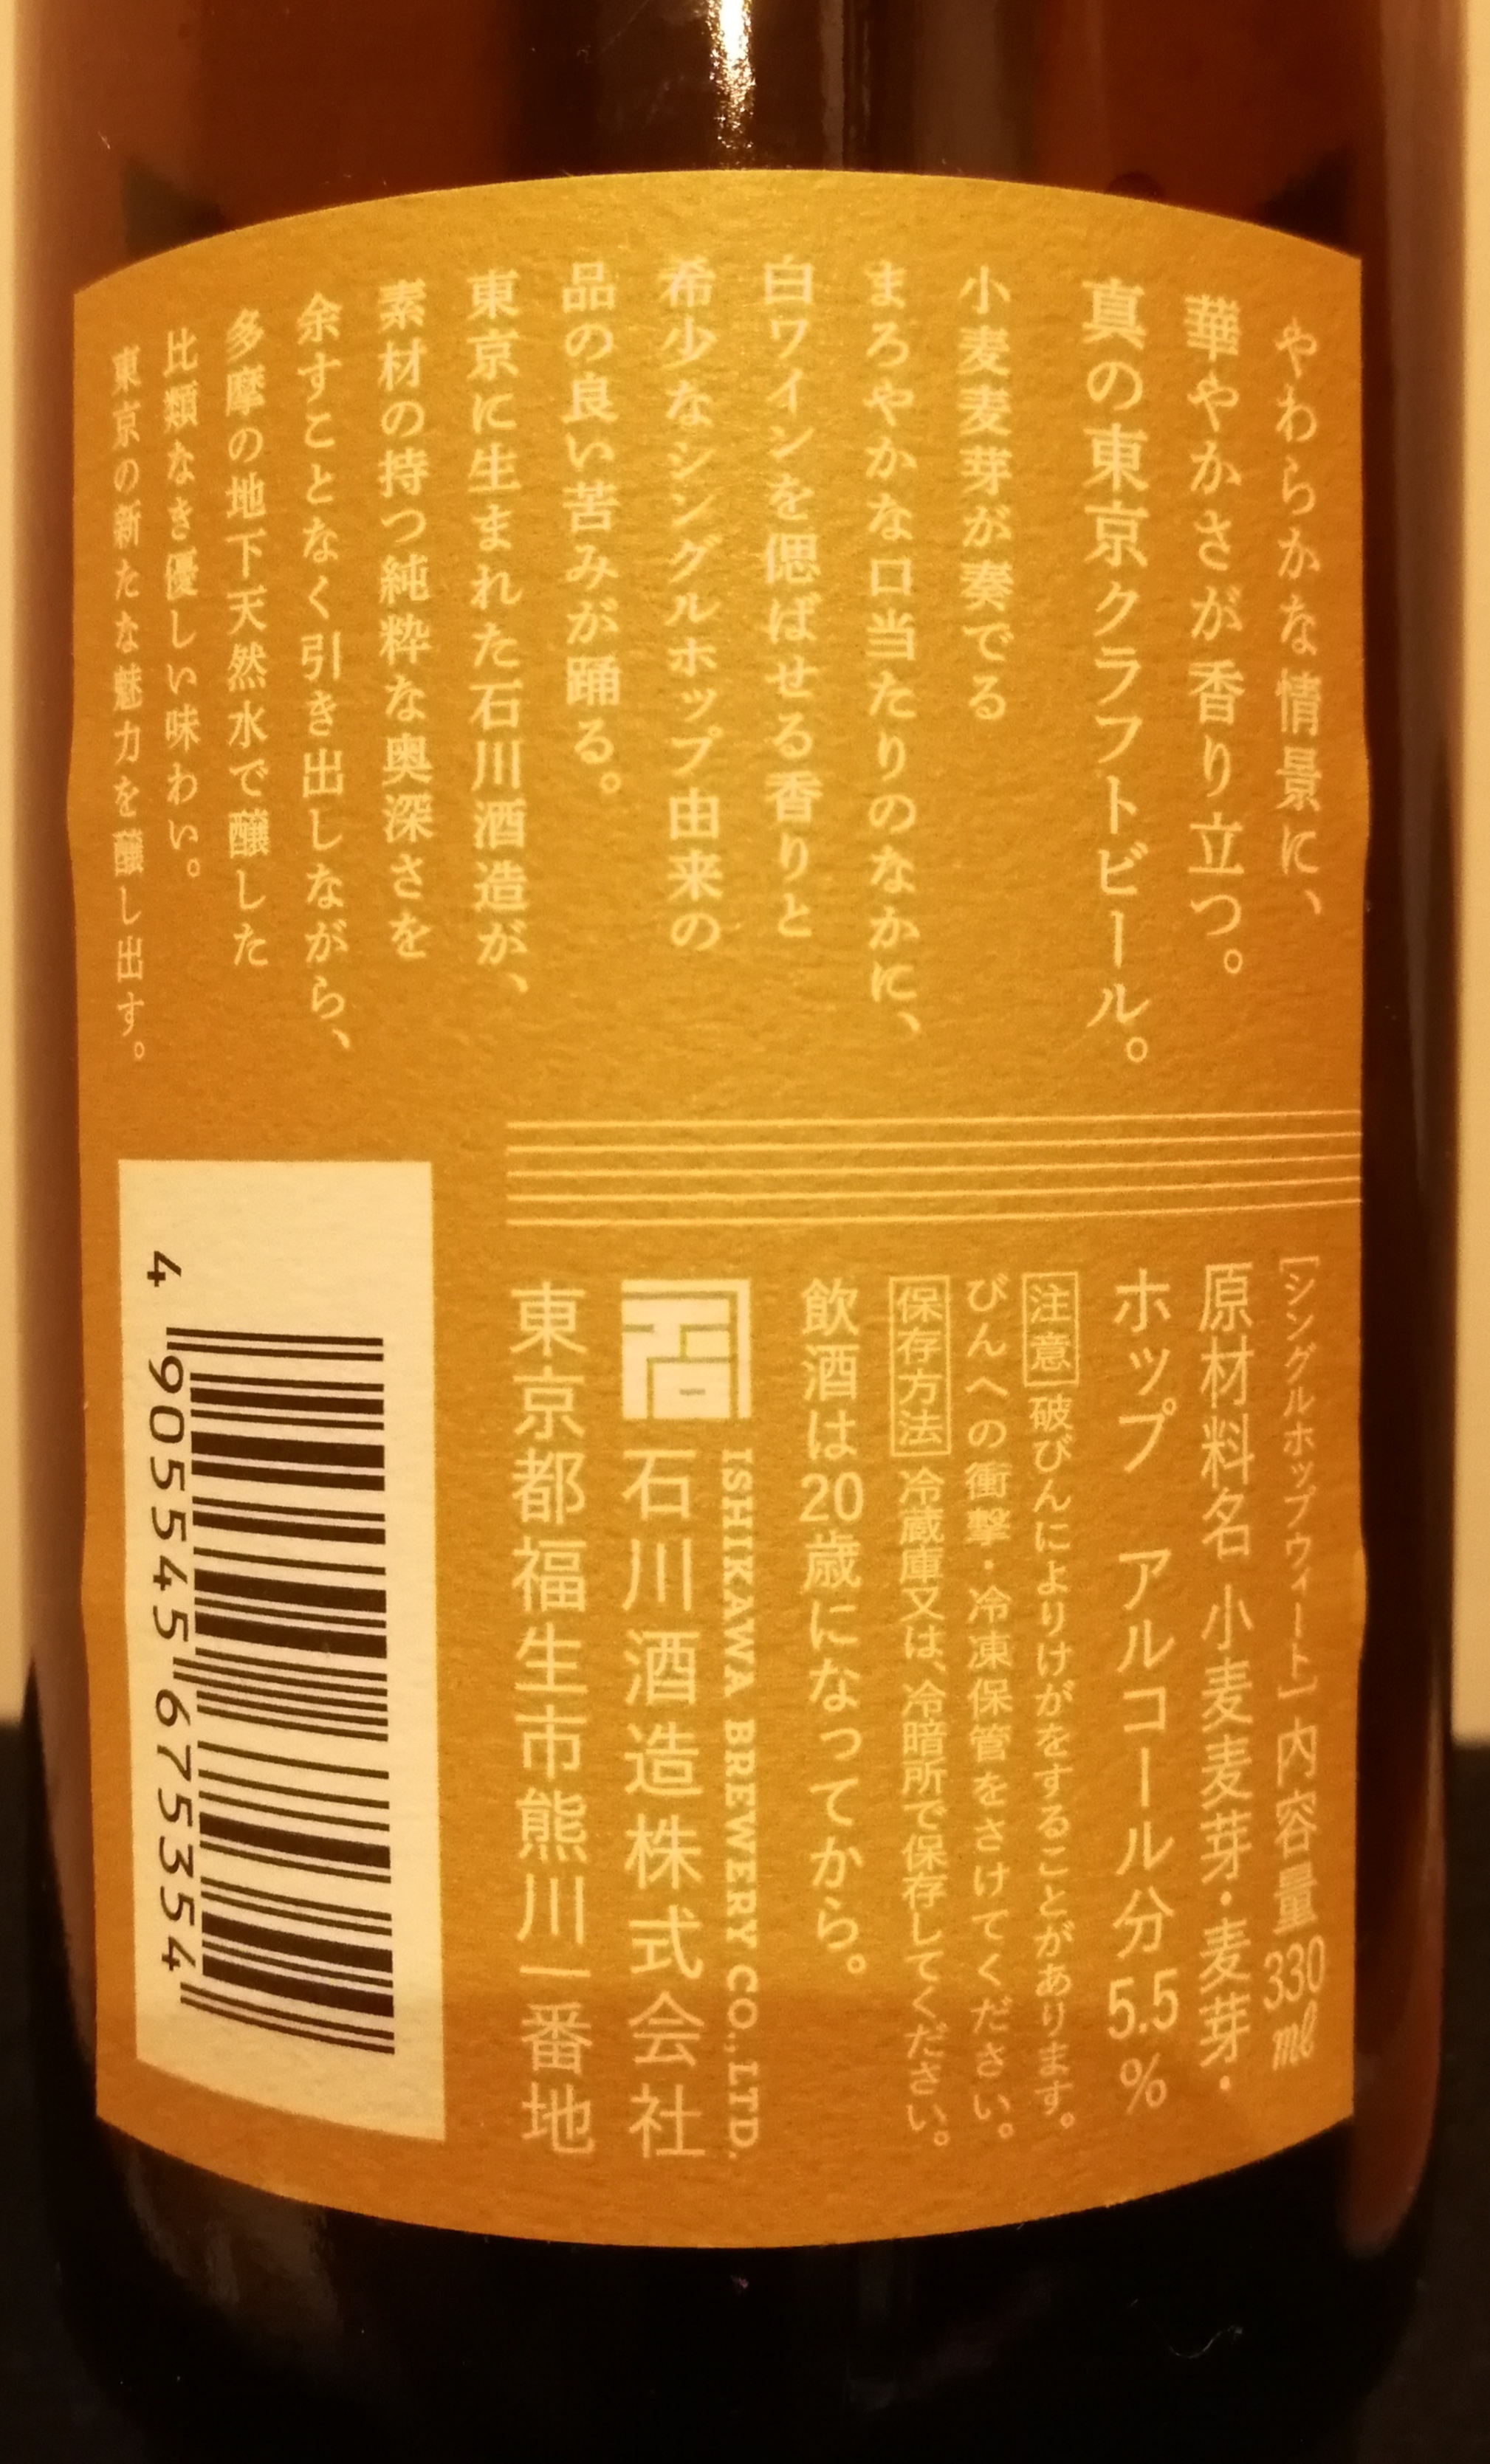 東京 石川酒造株式会社,TOKYOBLUES,SINGLEHOPWHEAT